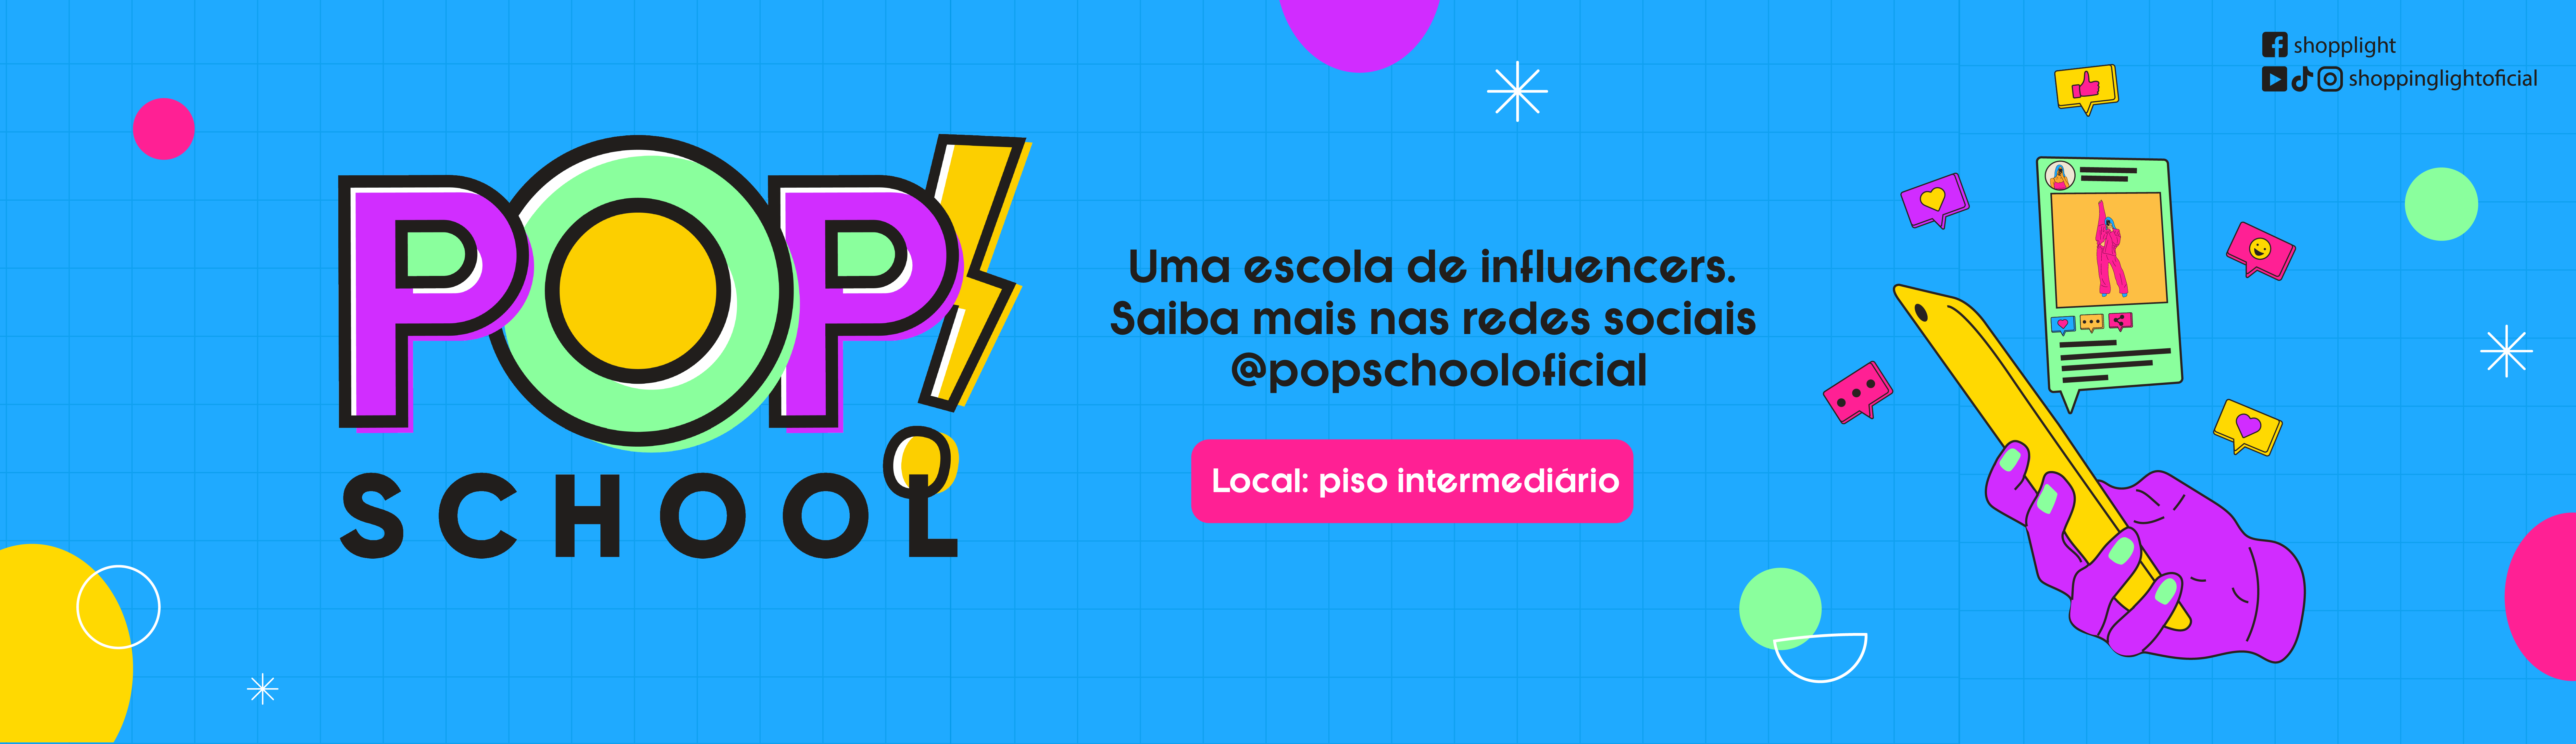 Pop School - Escola de influencer 